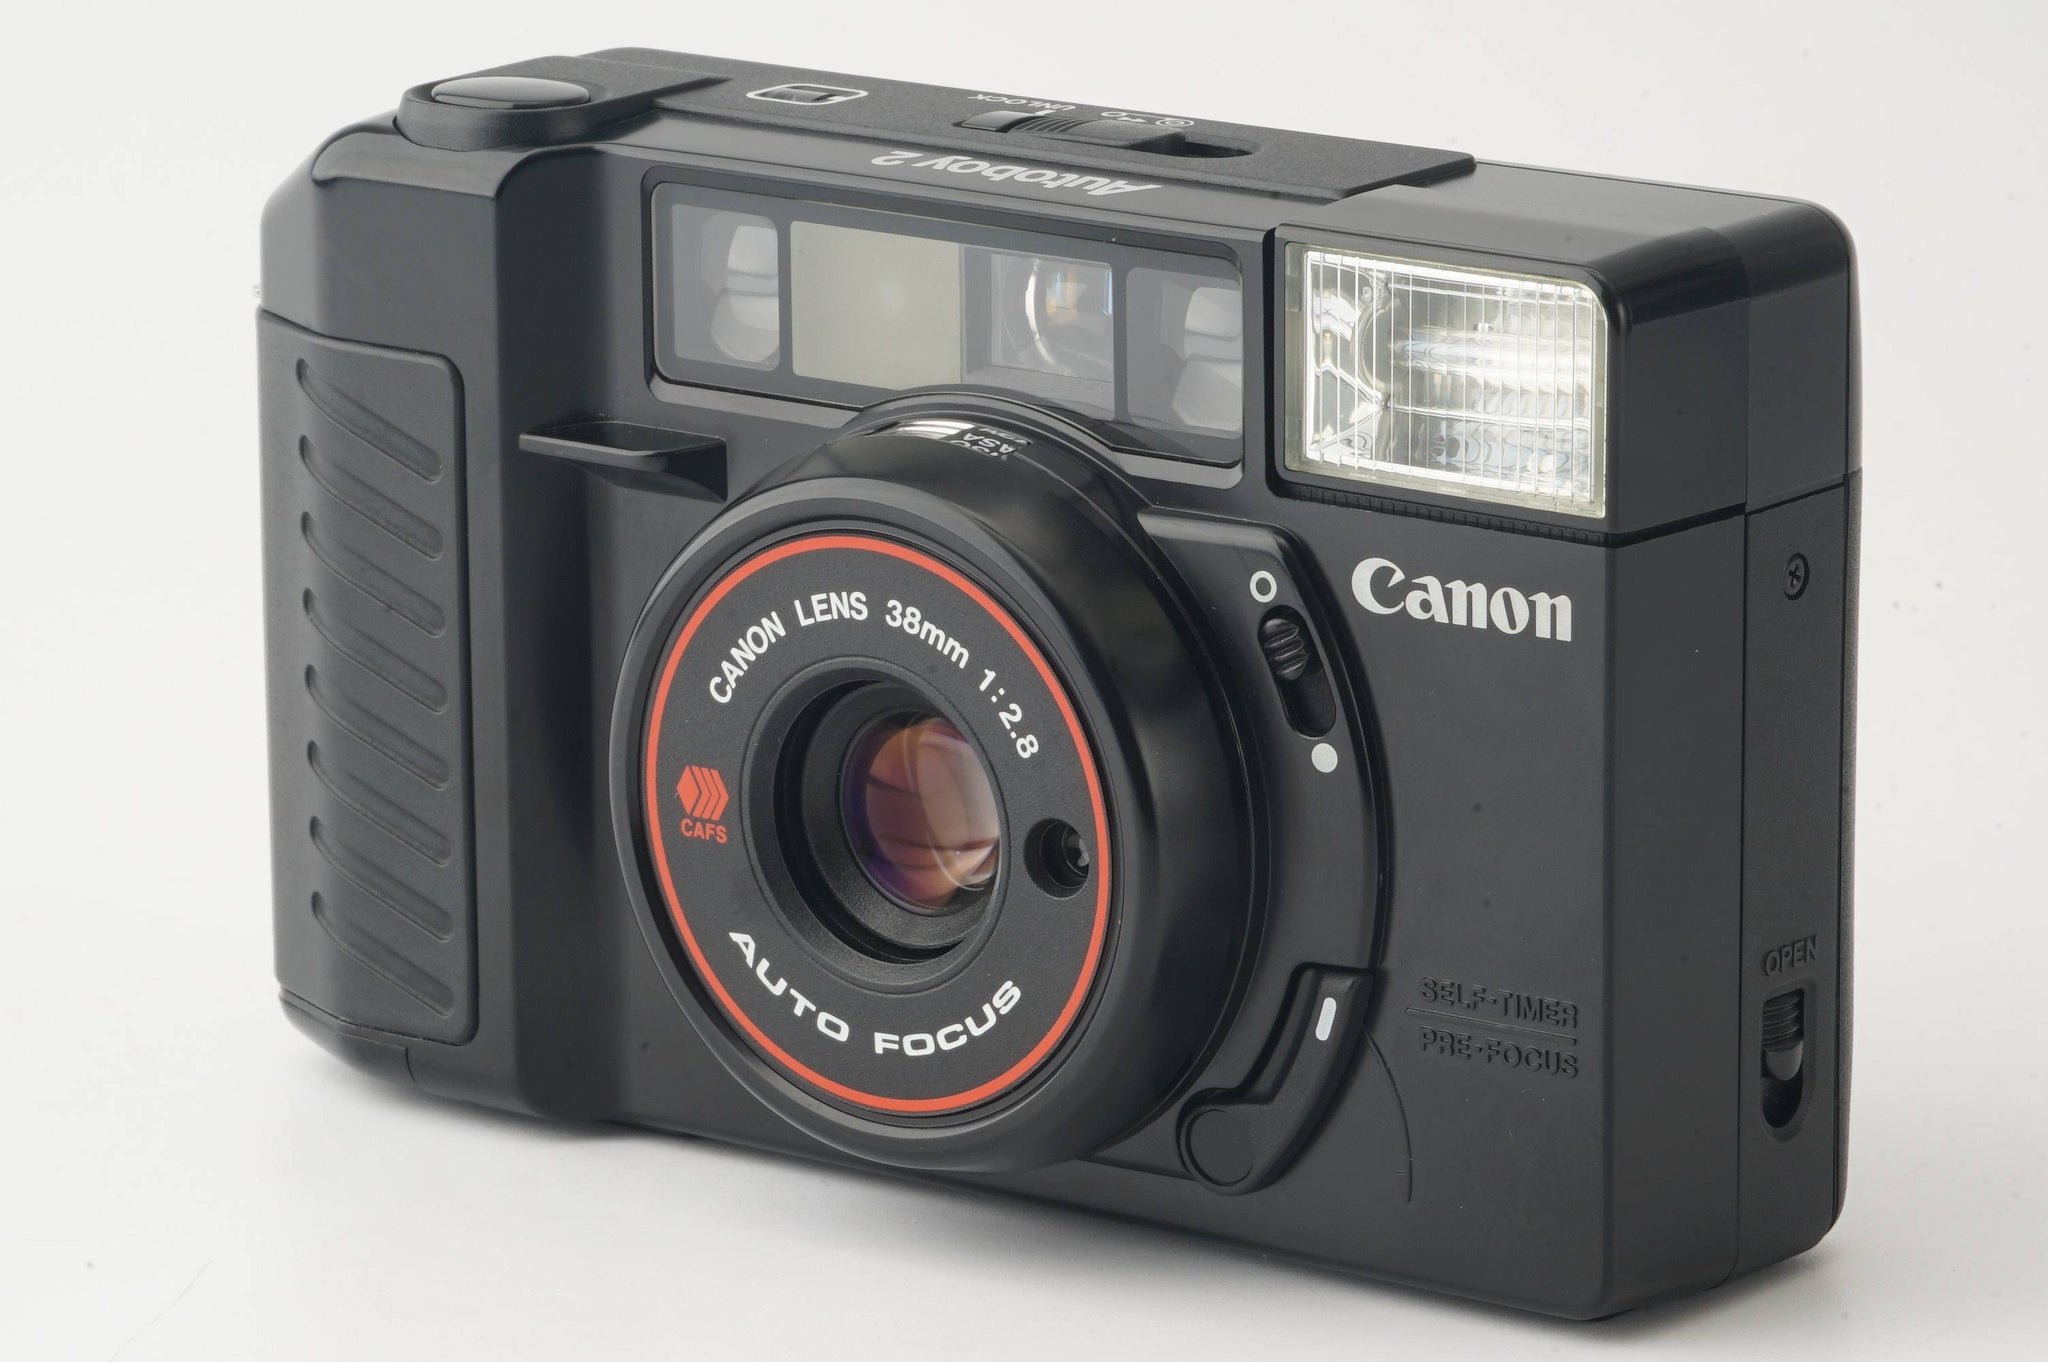 キヤノン Canon Autoboy 2 Quartz date / 38mm F2.8 – Natural Camera 